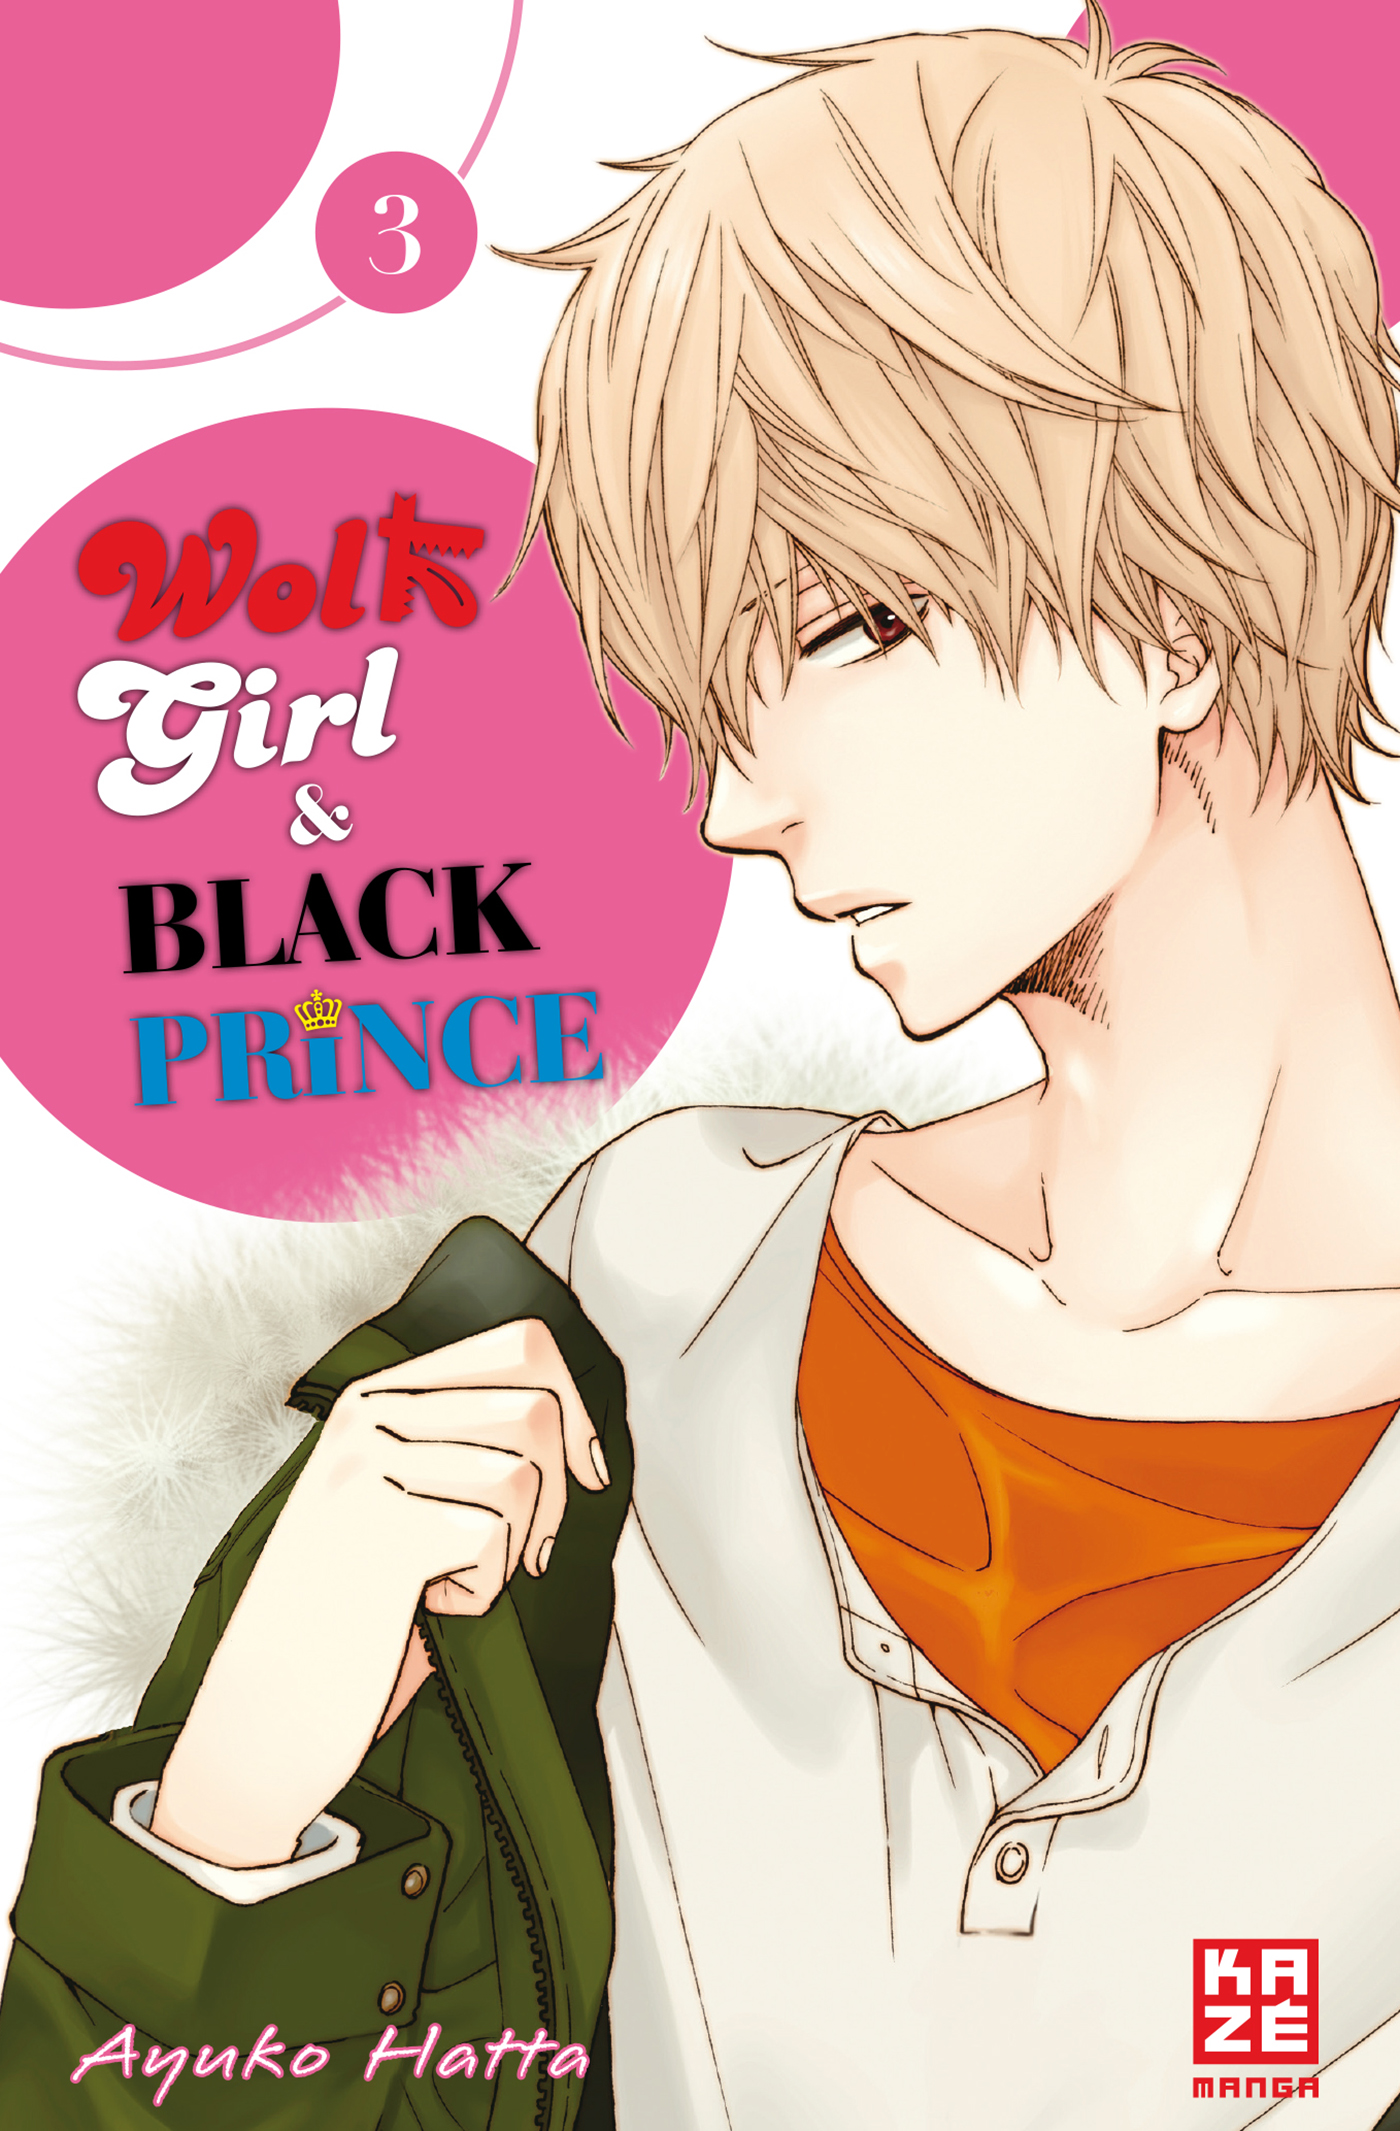 Girl 3 Wolf & Band Black - Prince